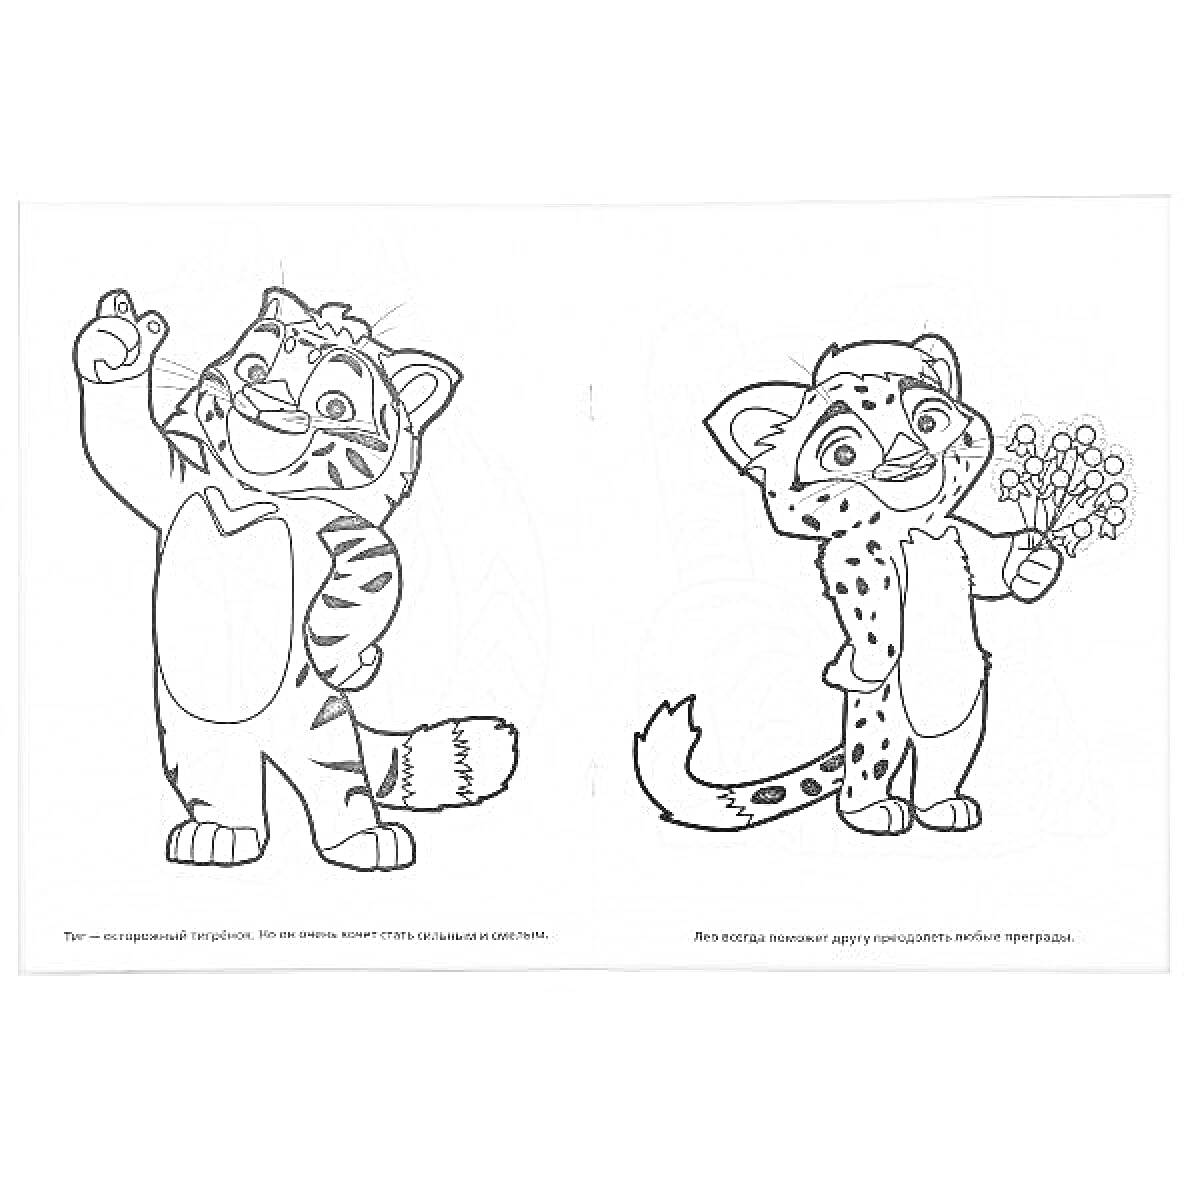 Лео (тигр, который машет рукой) и Тиг (леопард, держащий цветы)